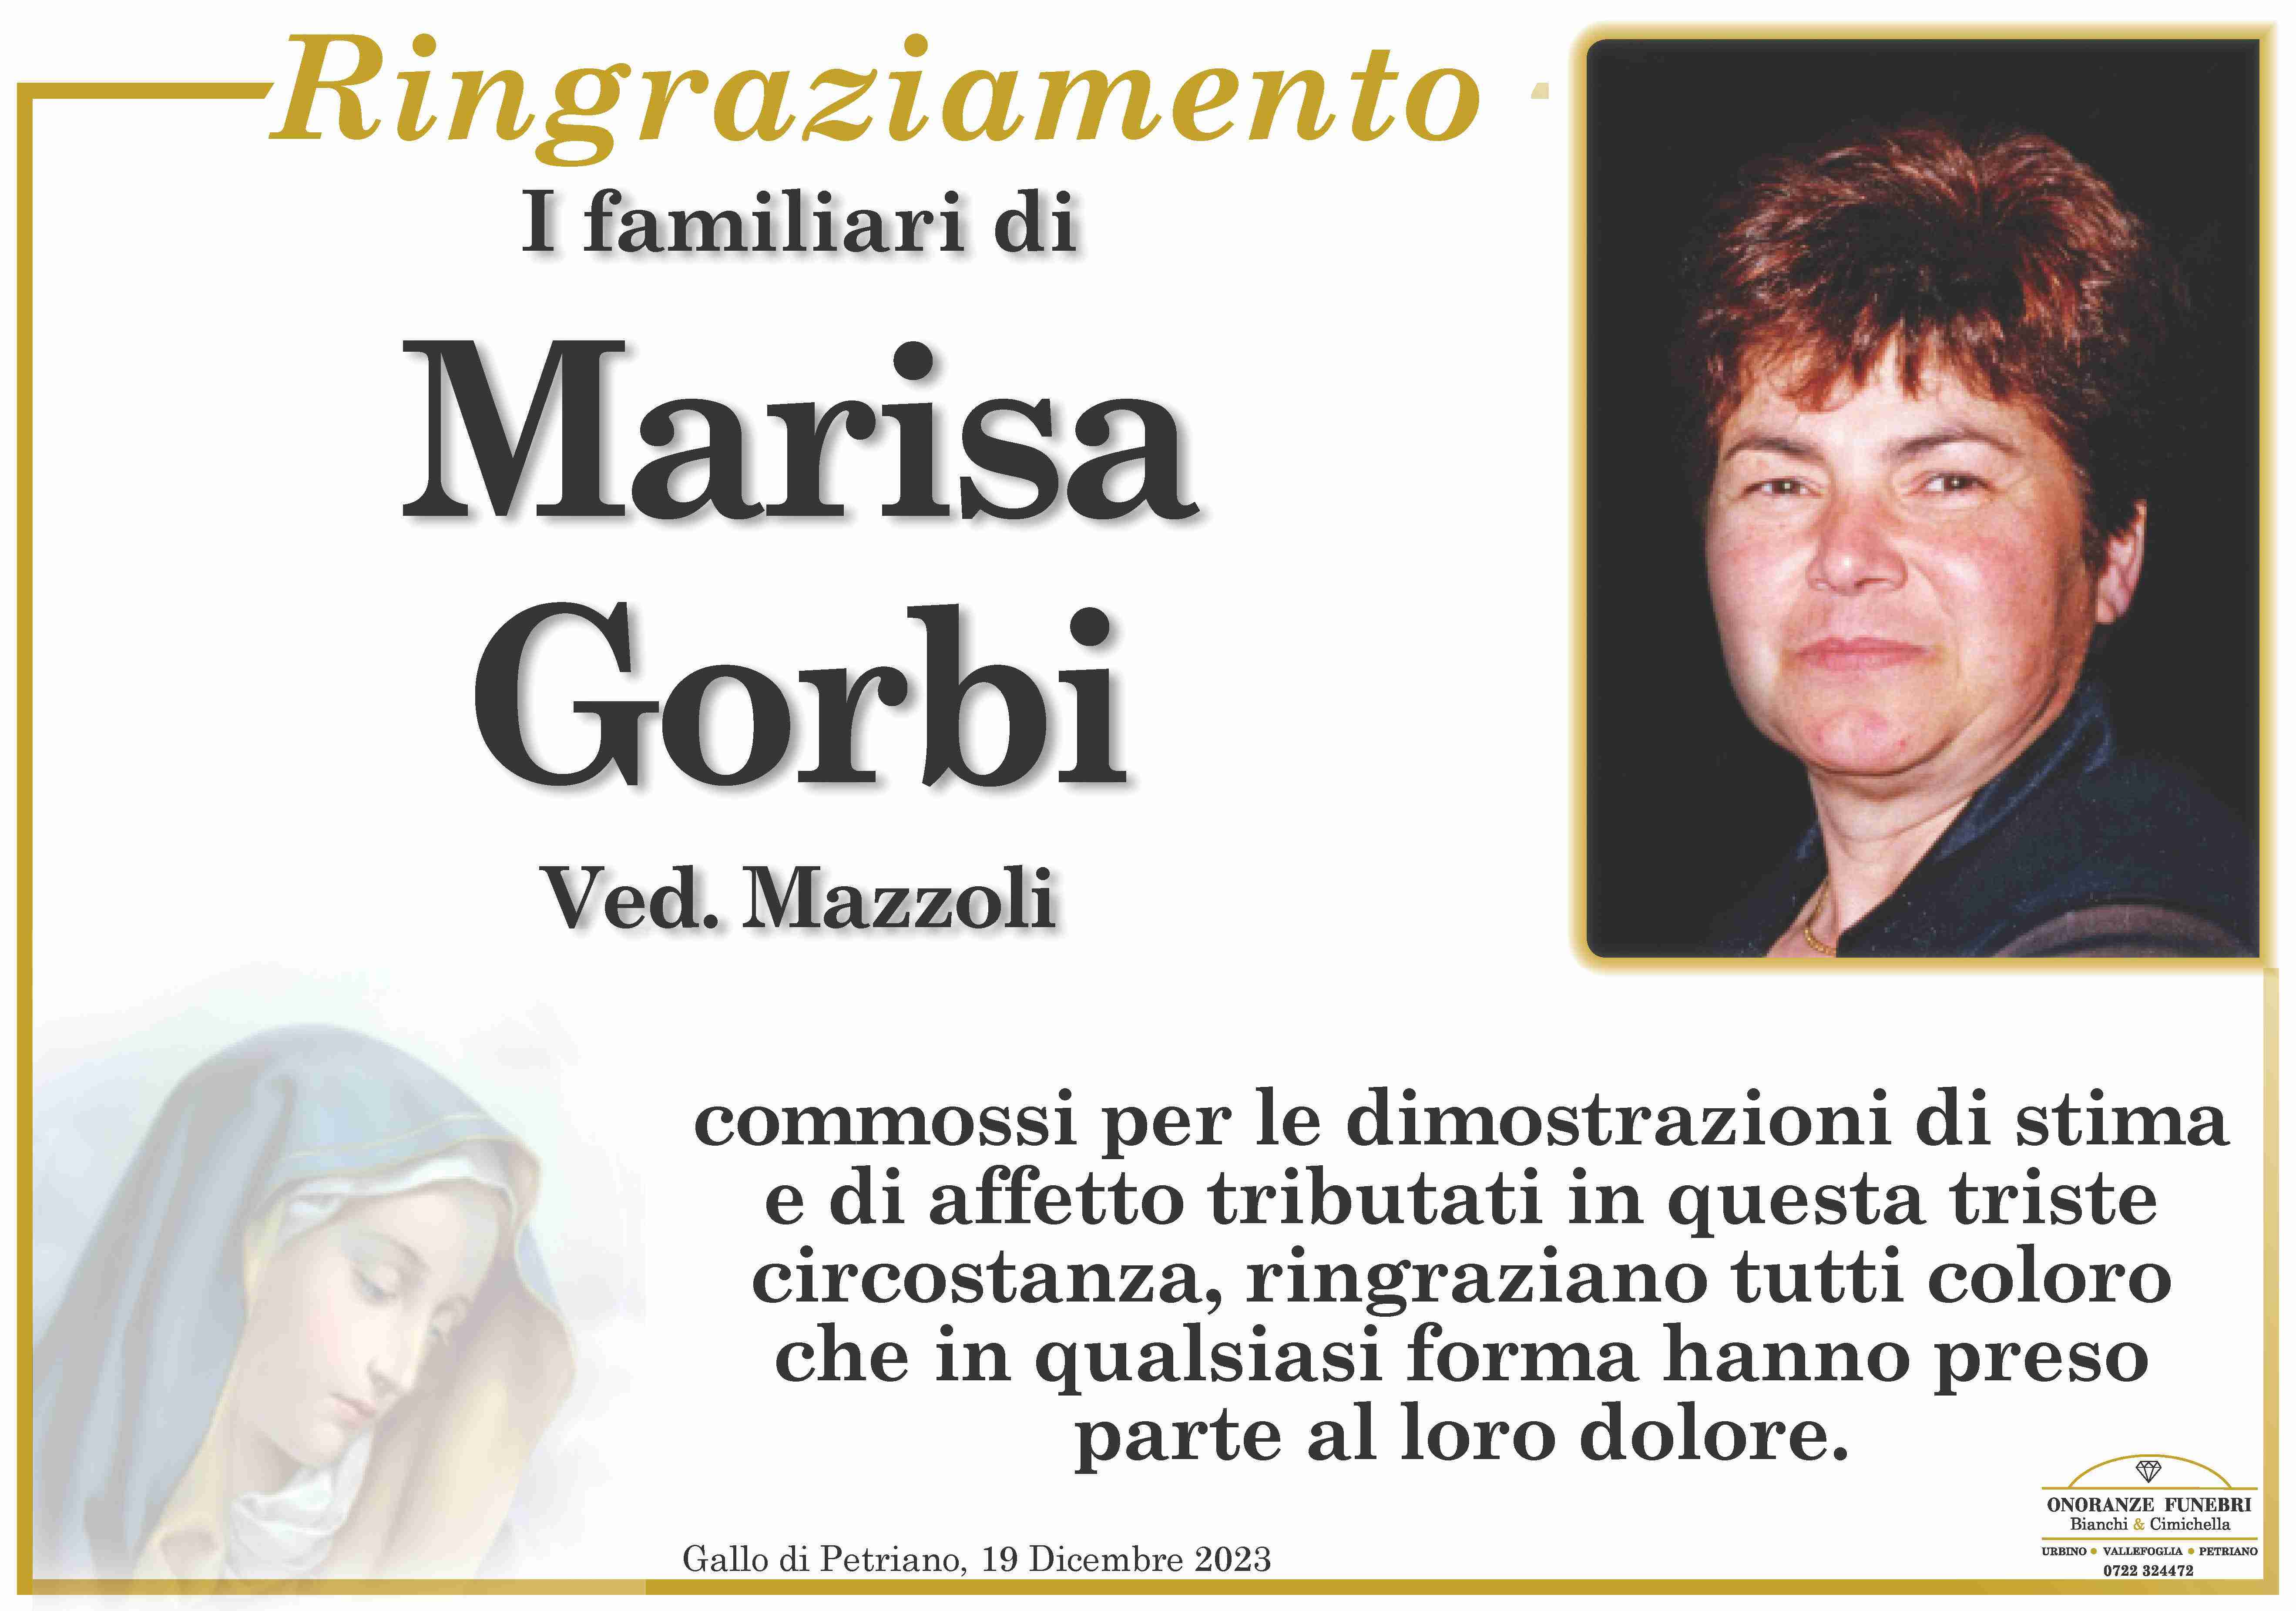 Marisa Gorbi